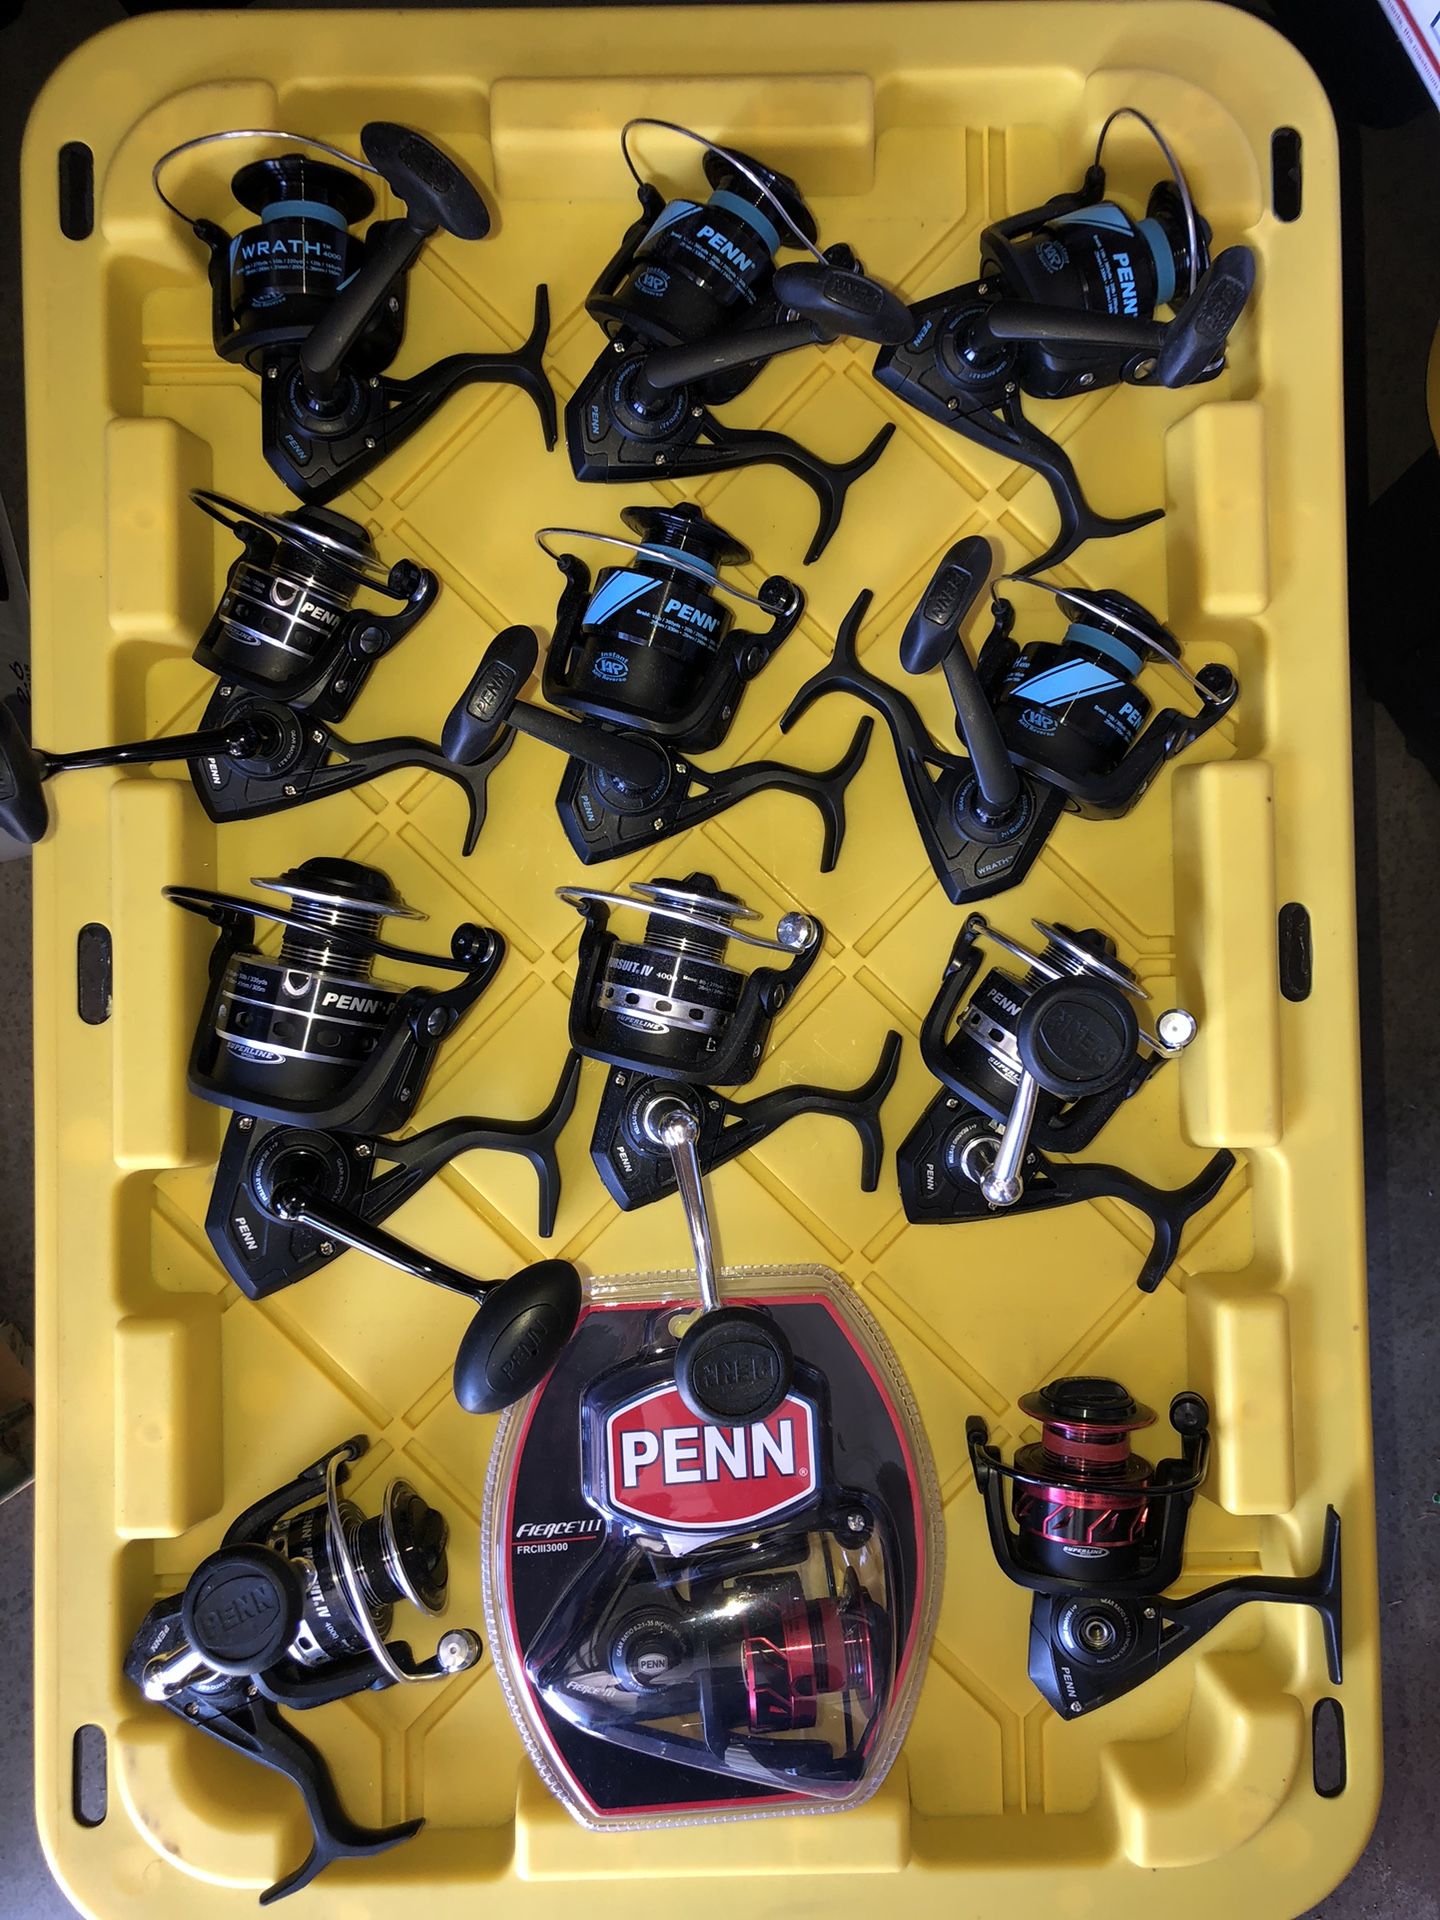 13 brand new Penn spinning fishing reels 